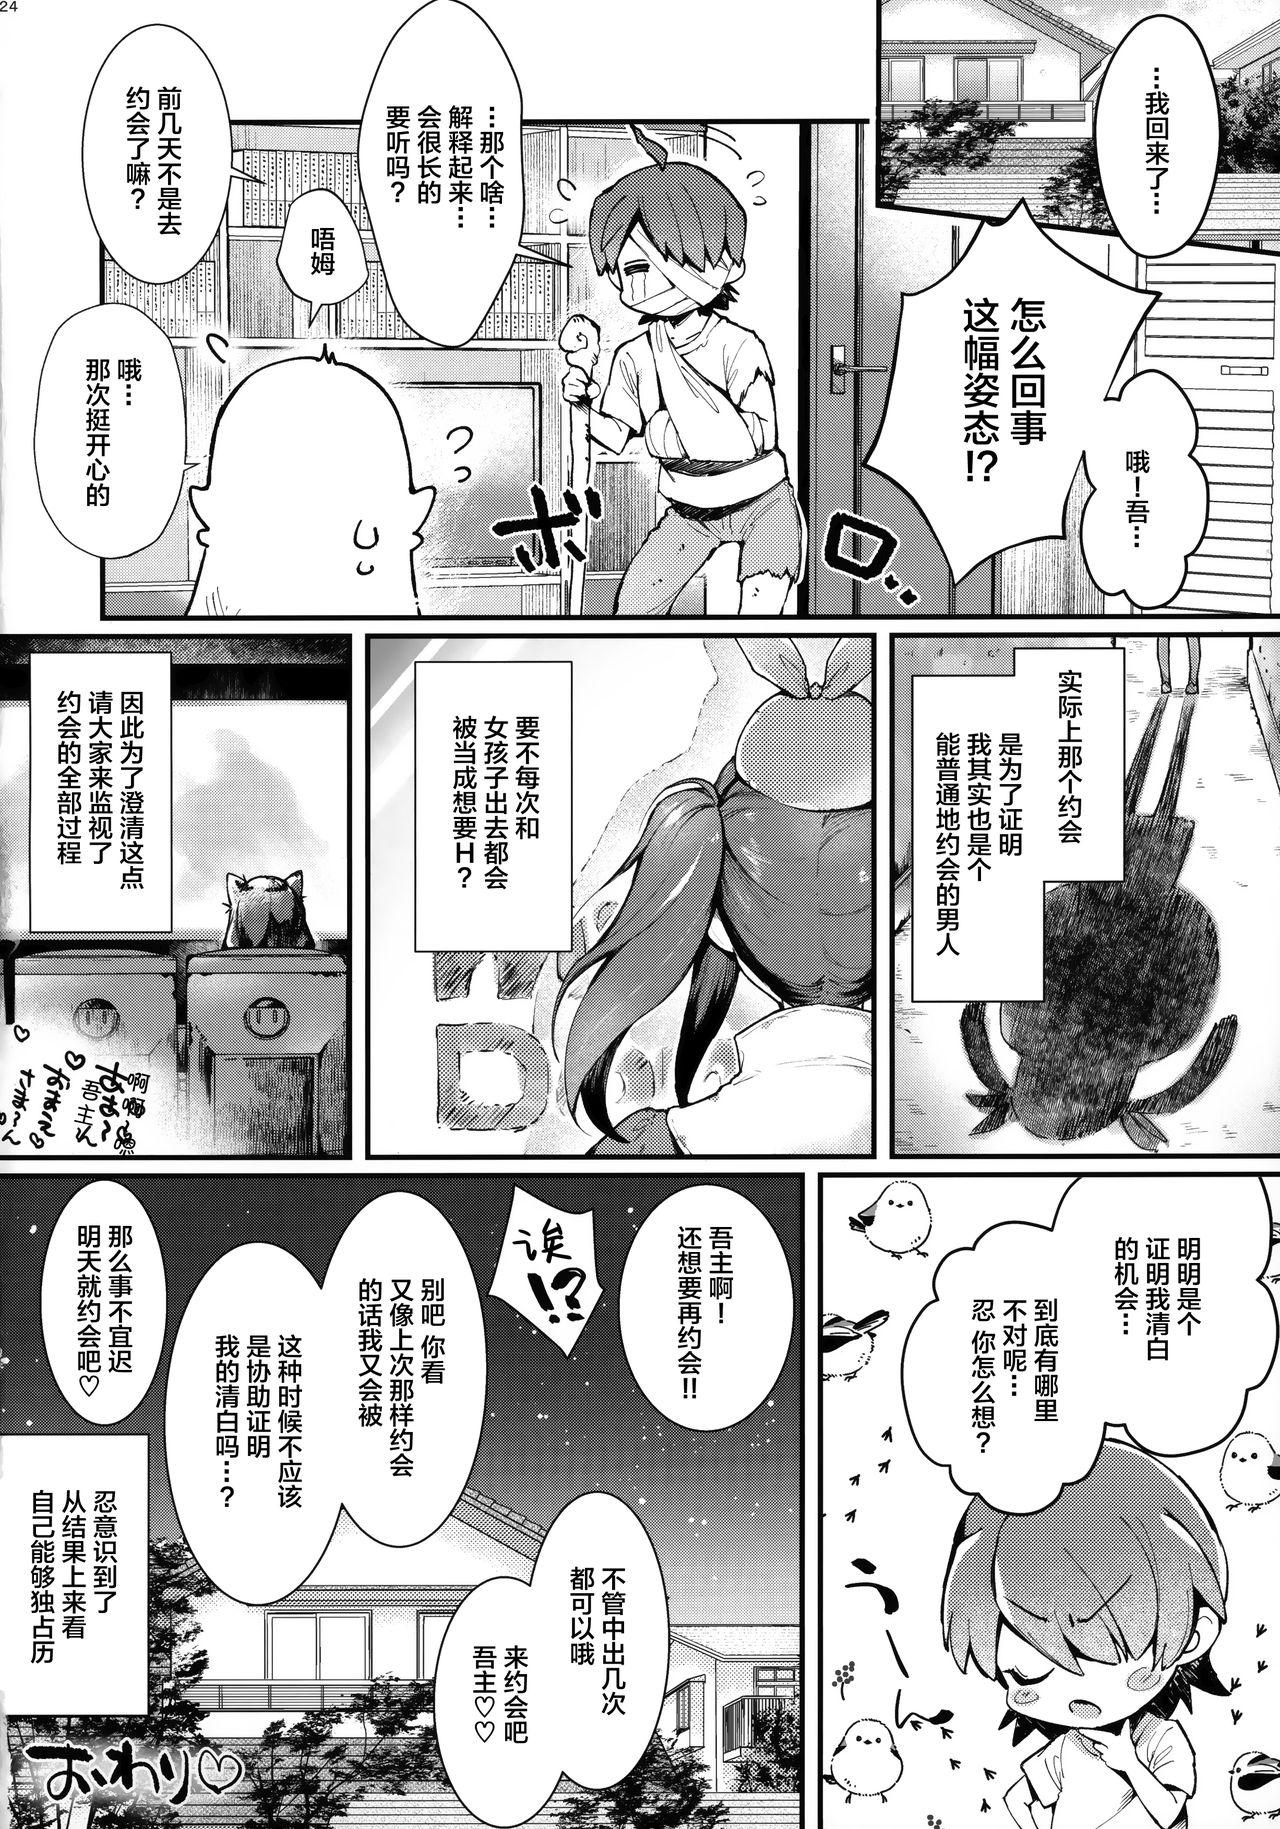 Facials Pachimonogatari Part 18: Shinobu Date - Bakemonogatari Bucetuda - Page 25